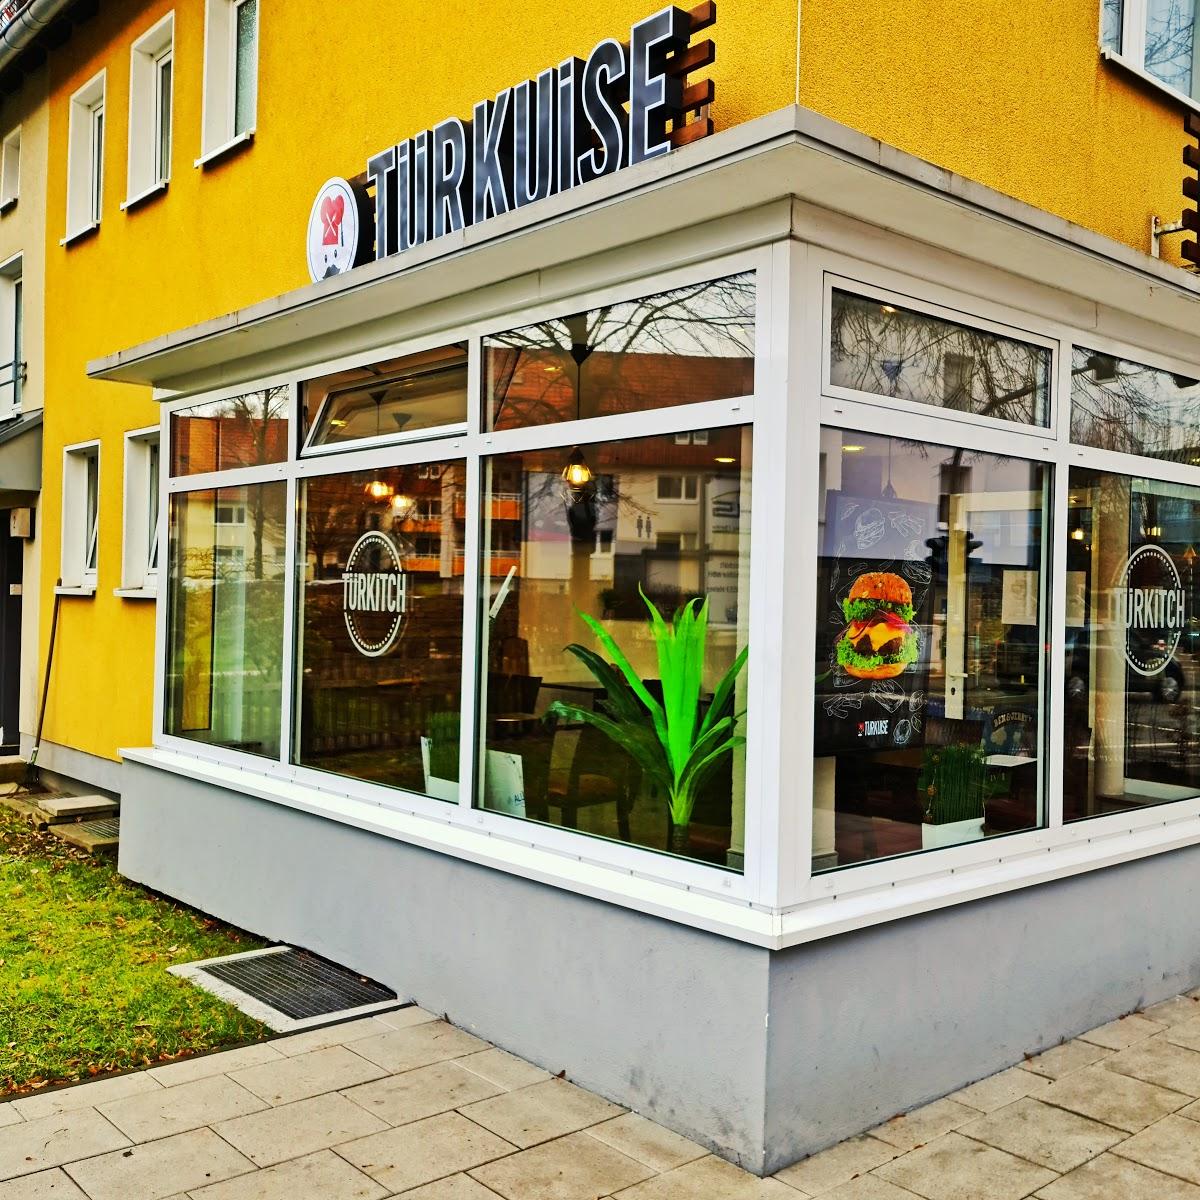 Restaurant "Türkuise" in Halver